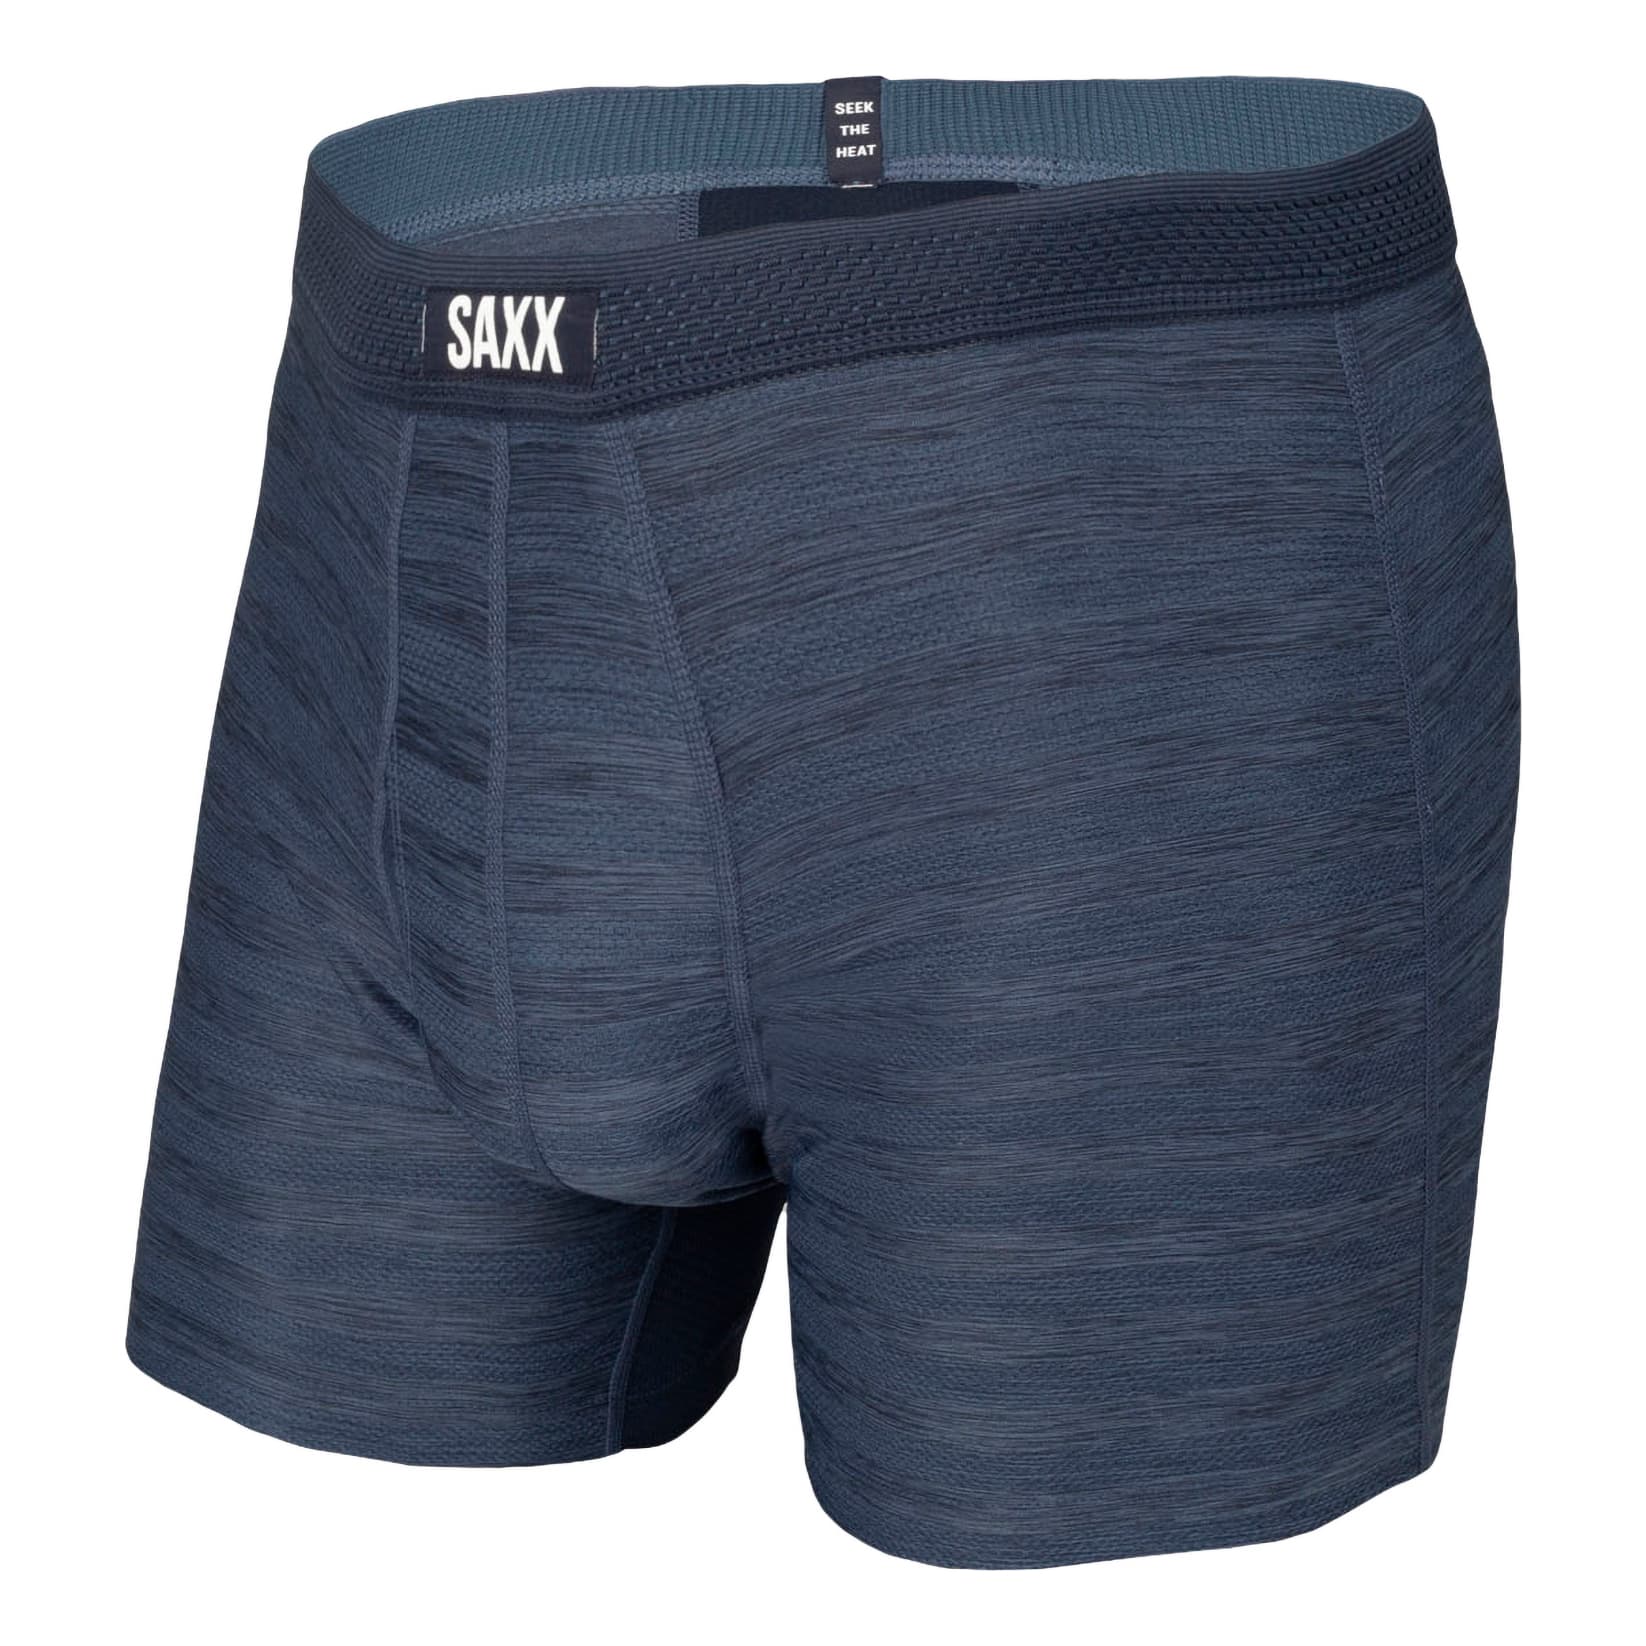 Saxx® Men’s Hot Shot Boxer with Fly - Dark Denim Heather